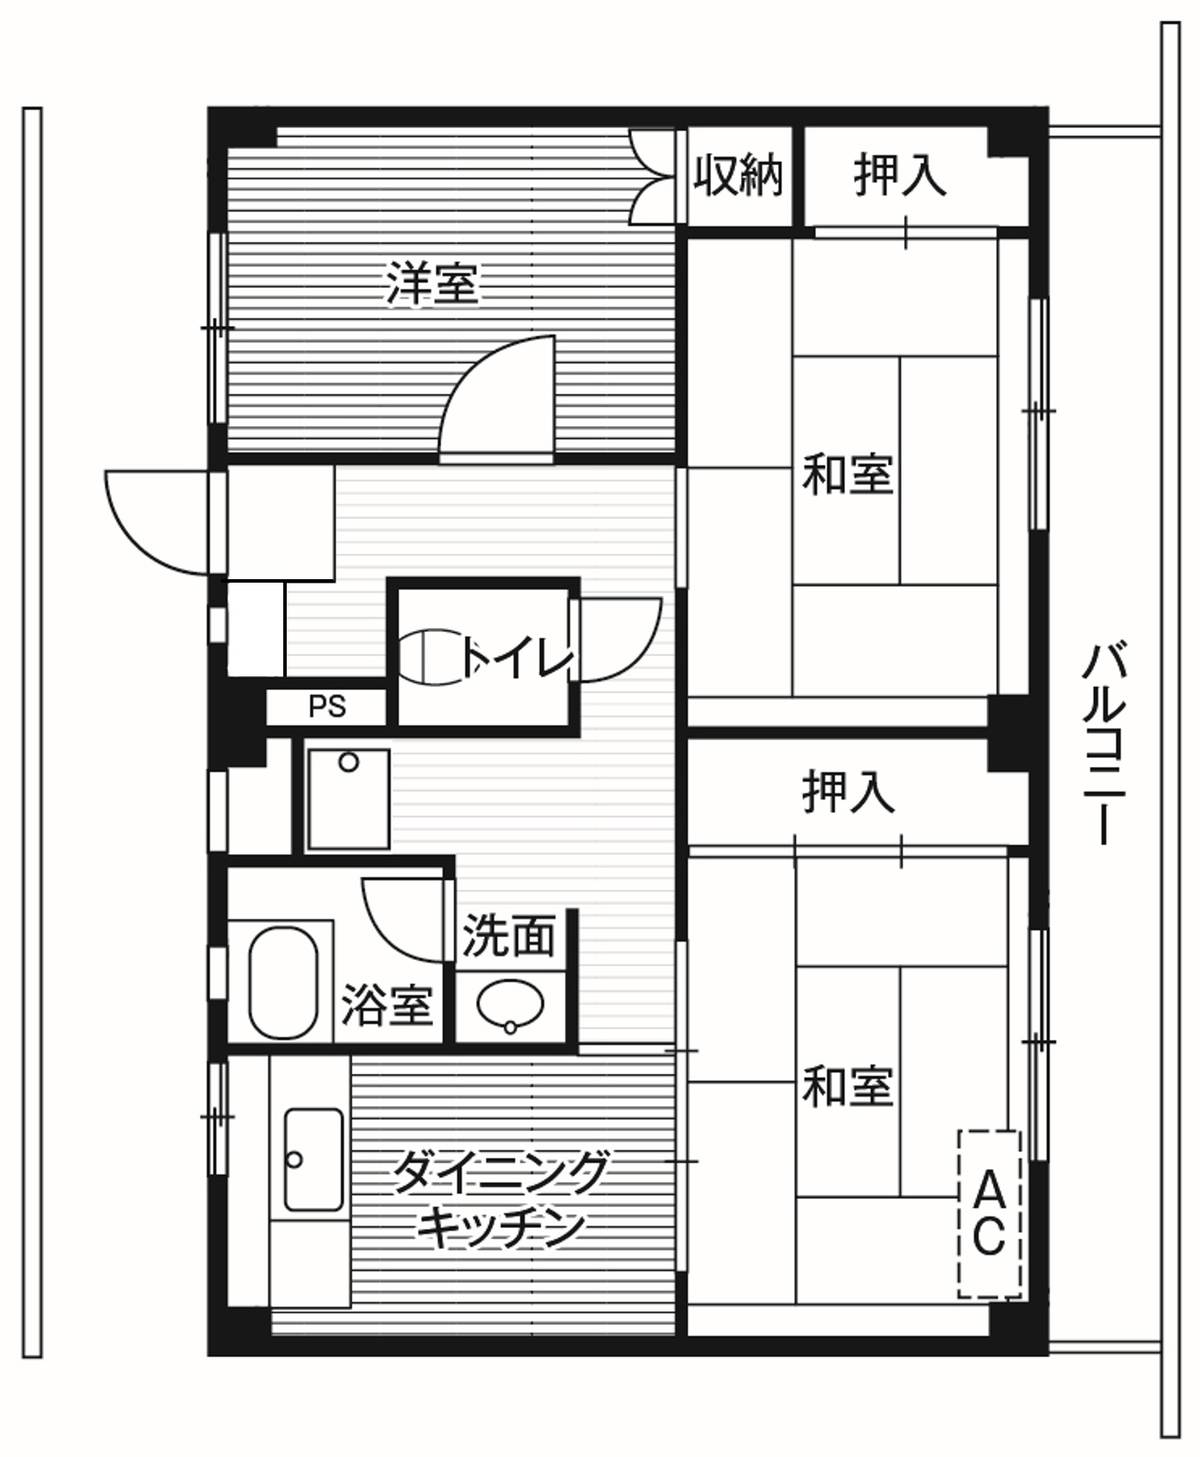 位于横須賀市的Village House 公郷的平面图3DK